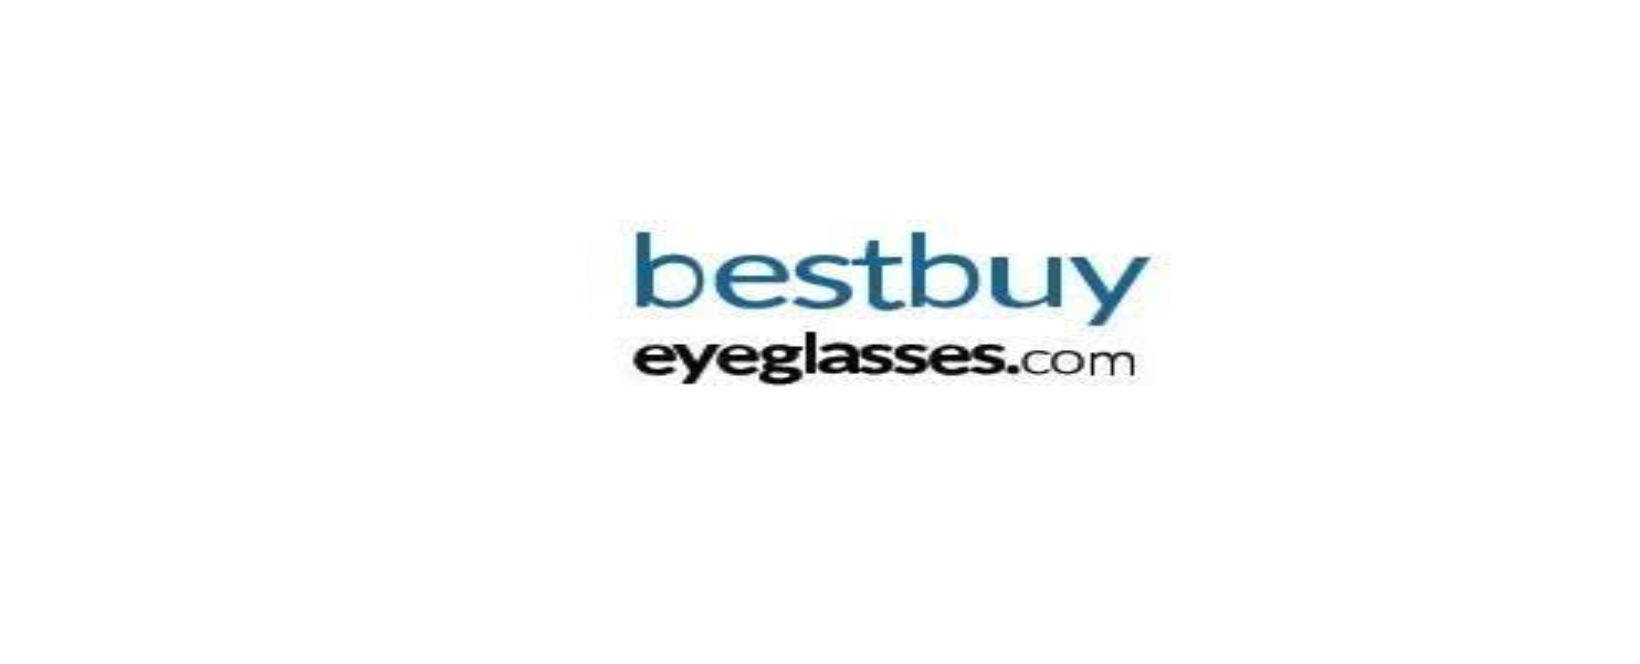 Best Buy Eyeglasses Discount Code 2022